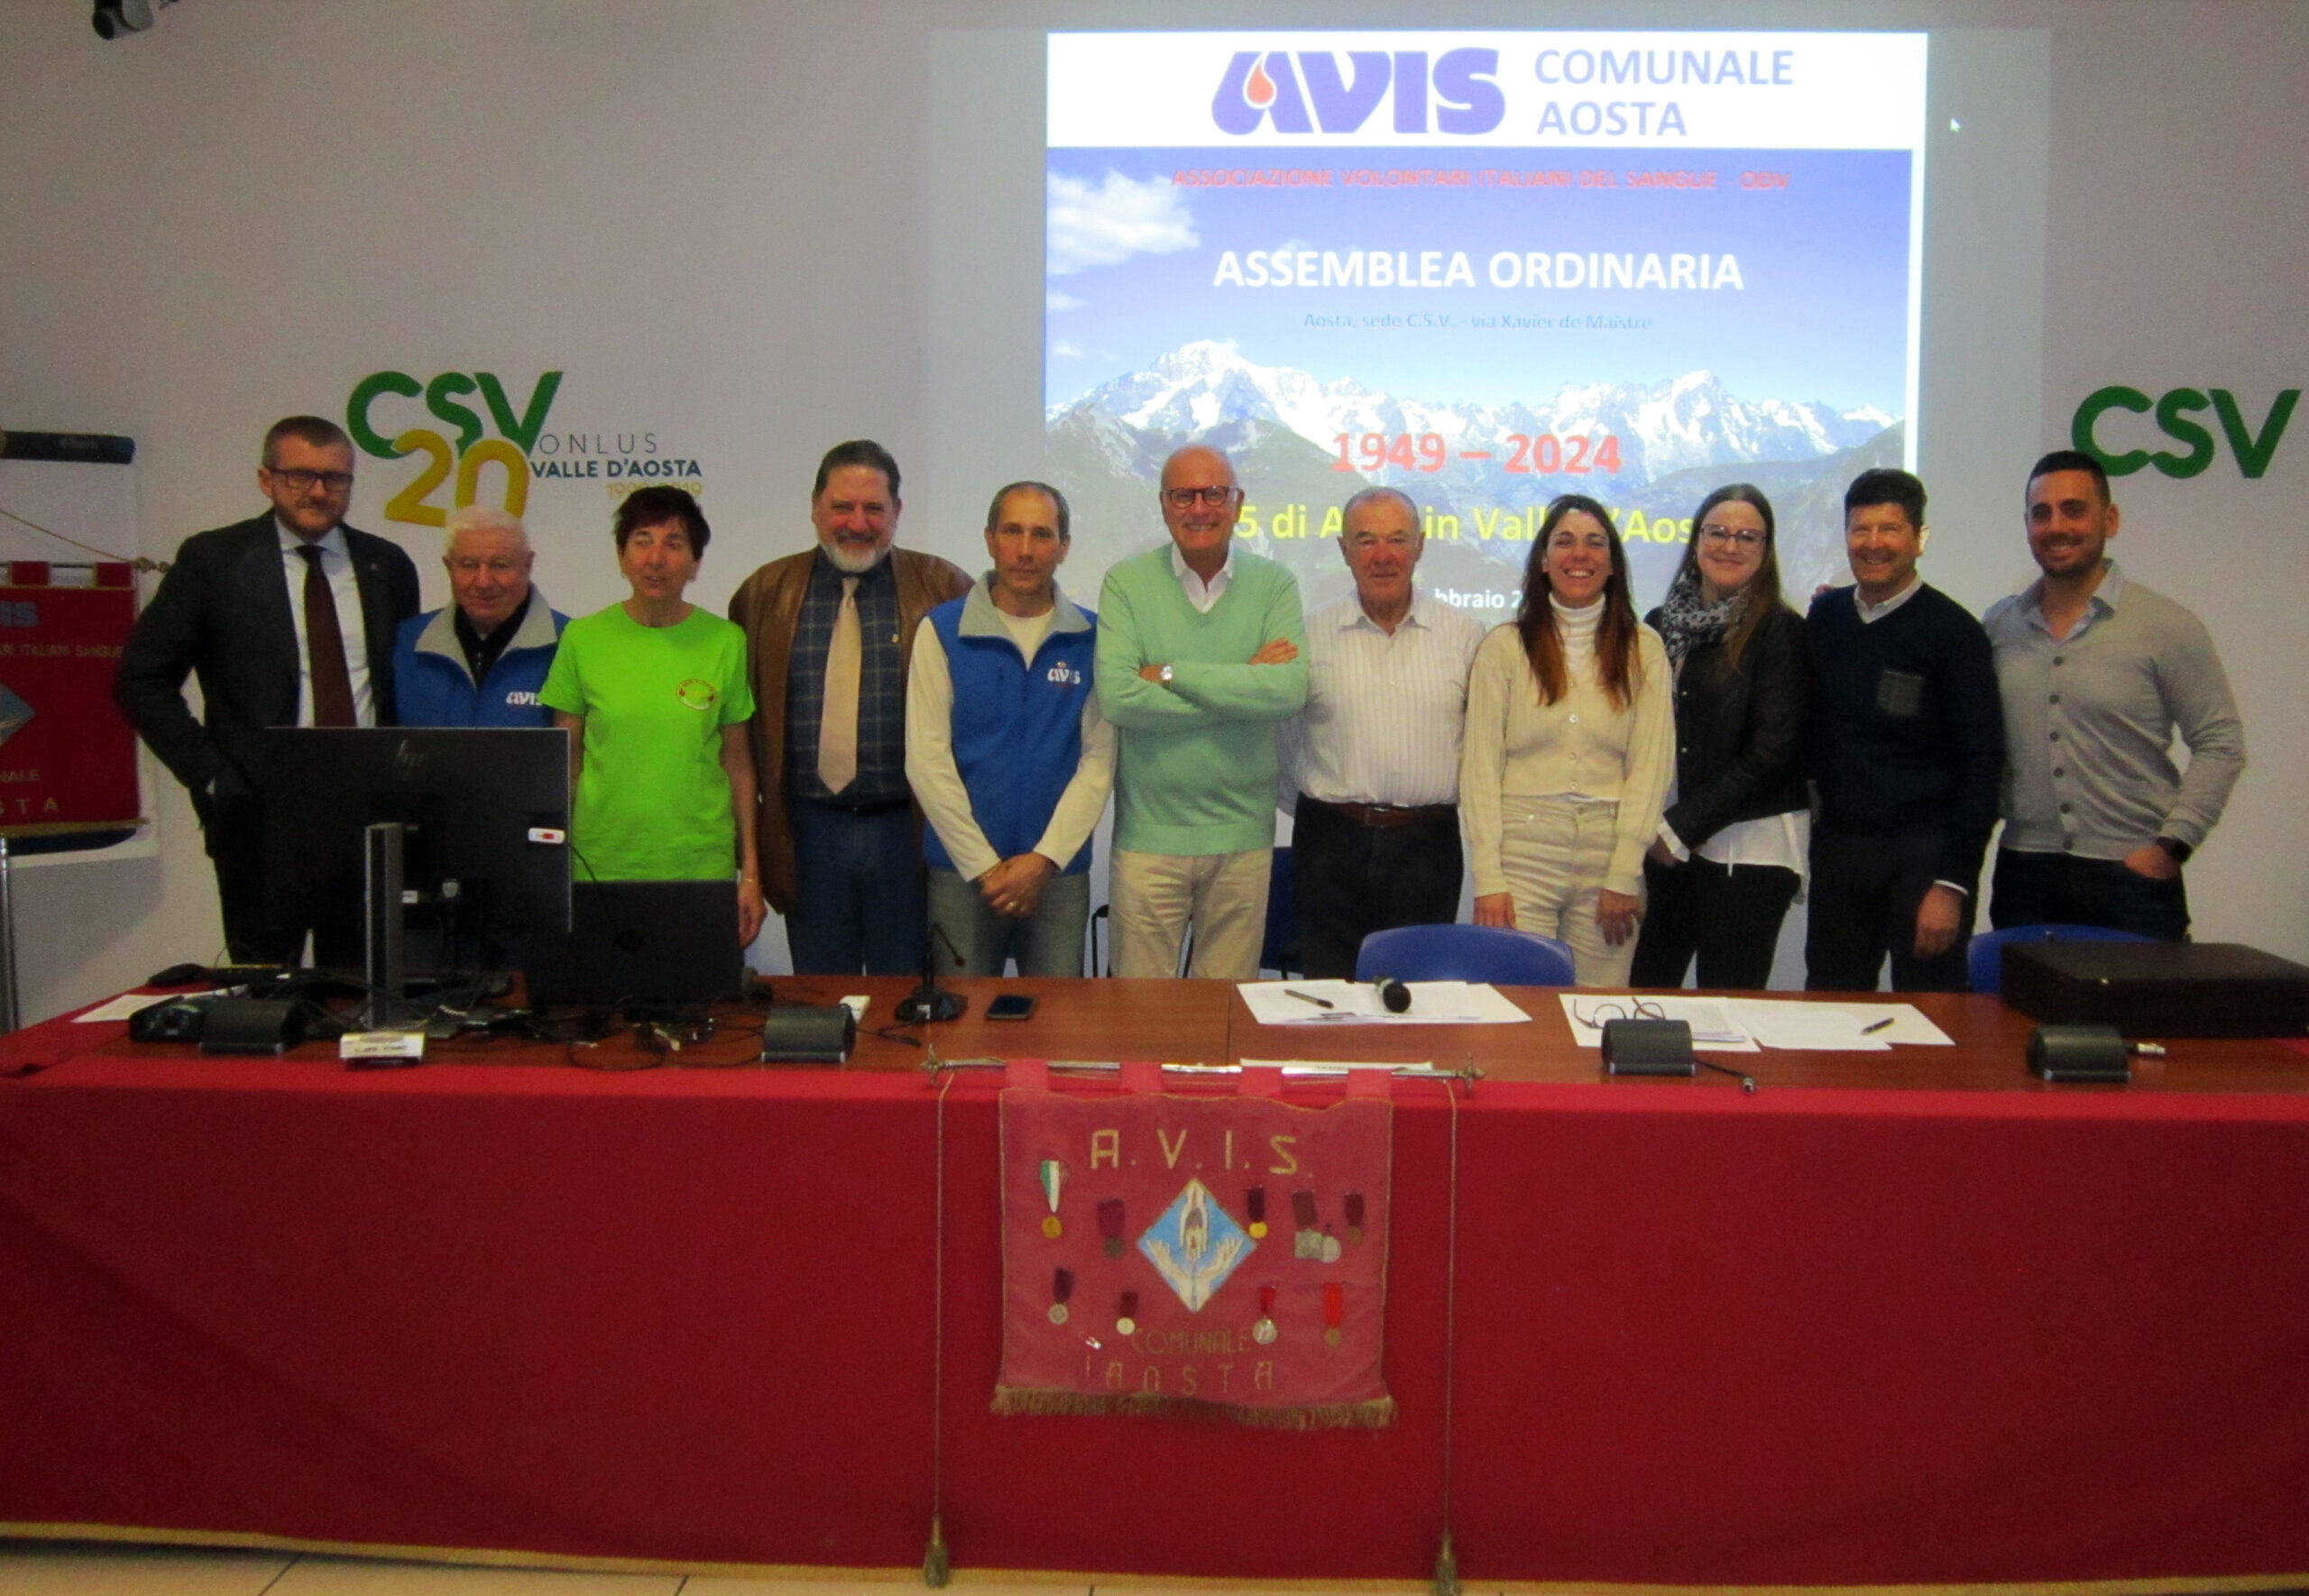 Avis Aosta celebra 75 anni di solidarietà